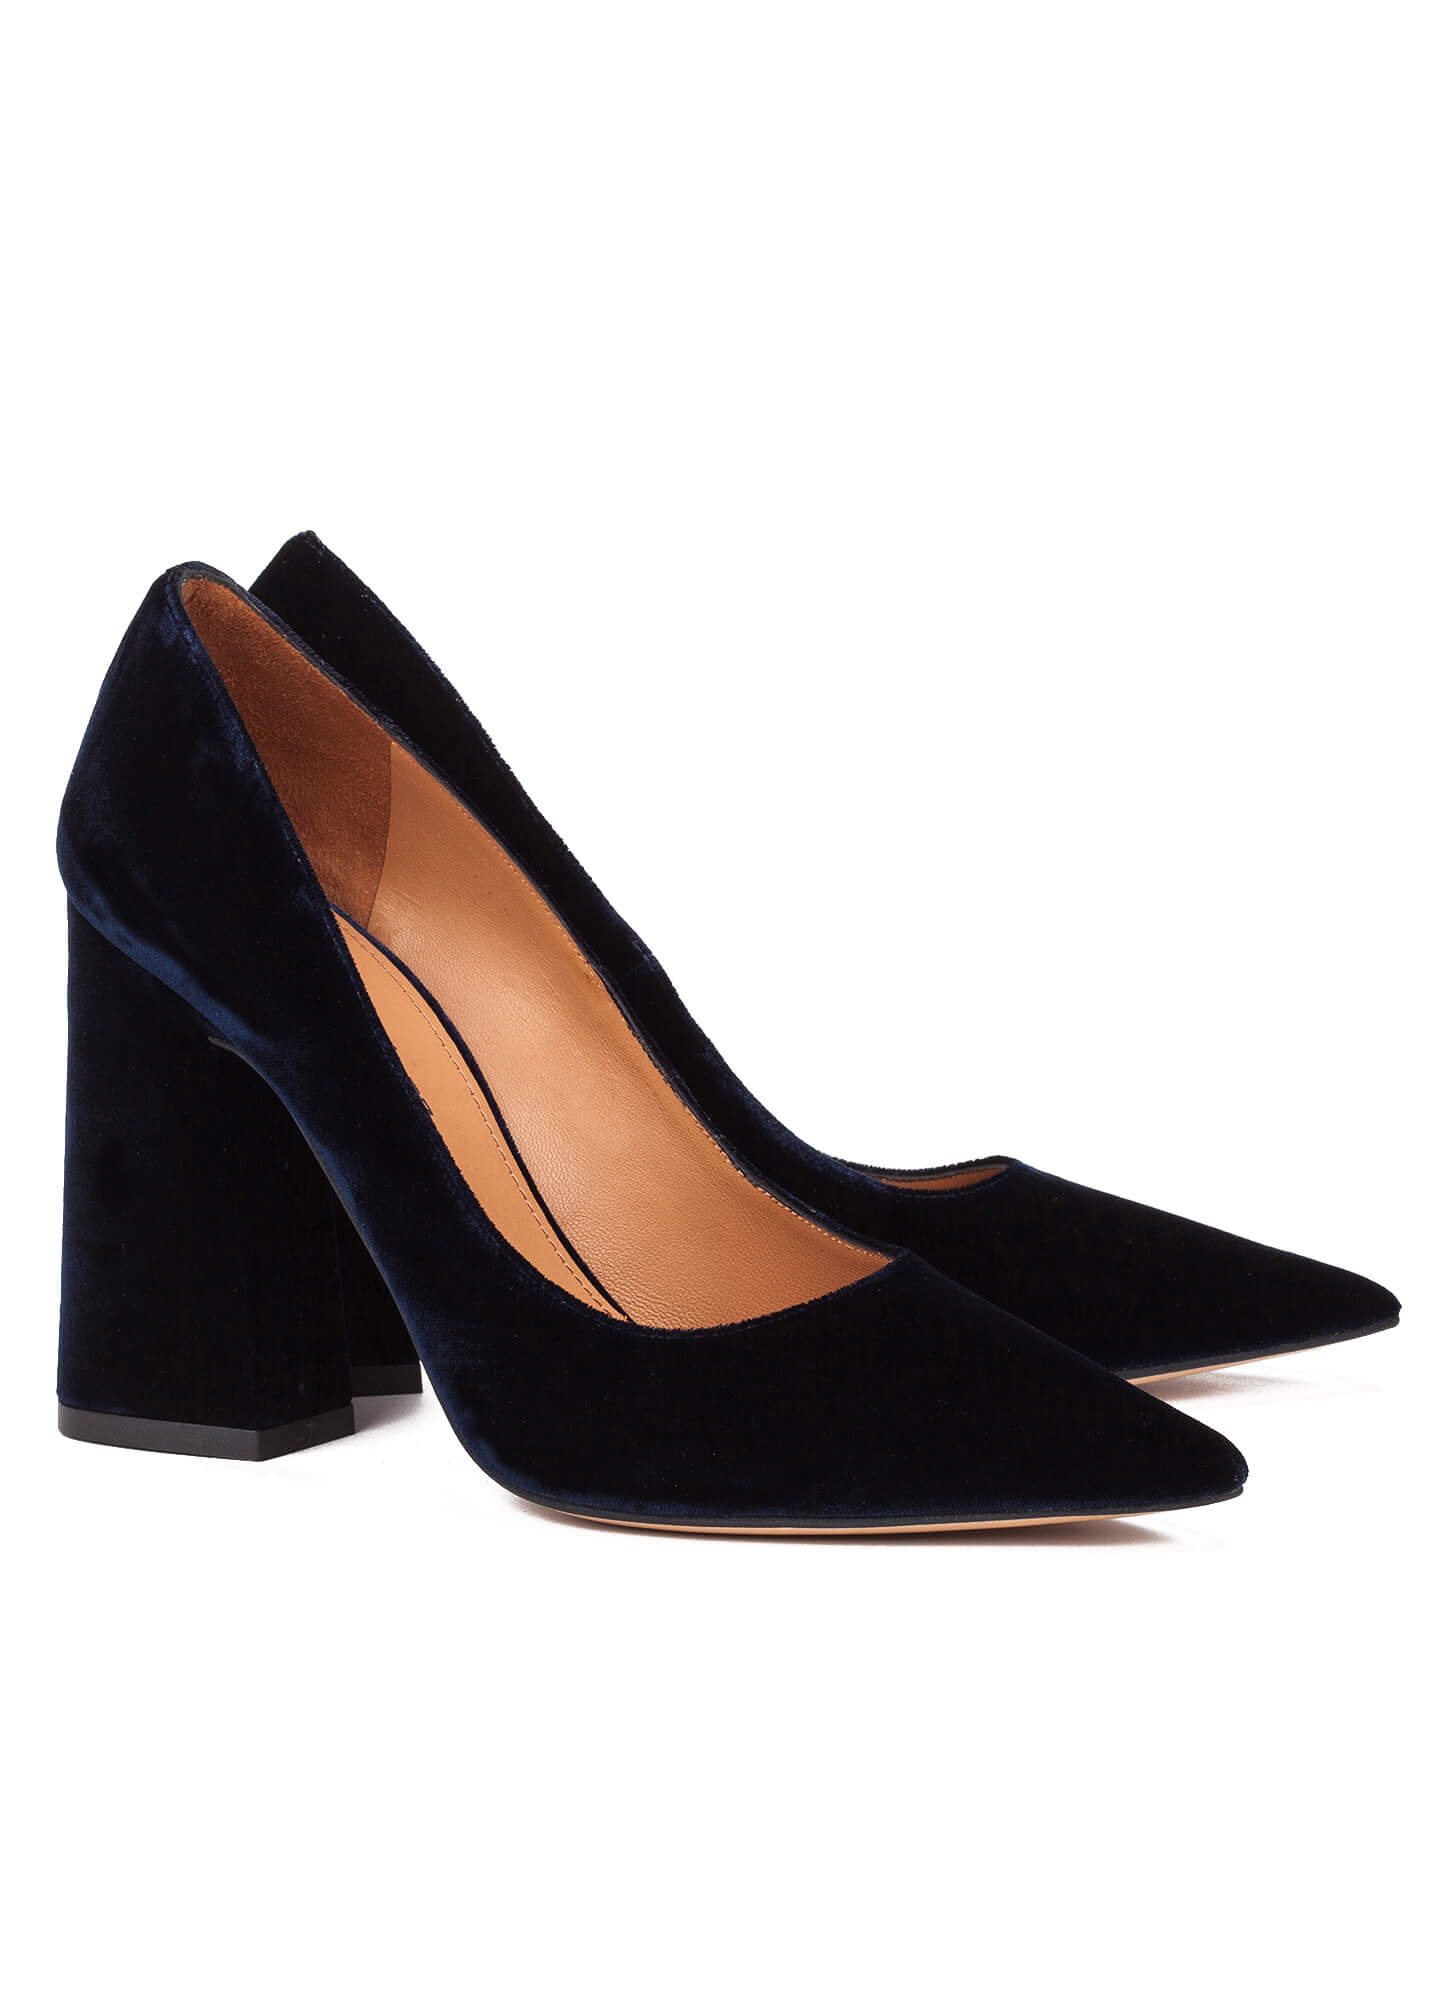 High block heel pumps in blue velvet - online shoe store Pura Lopez ...